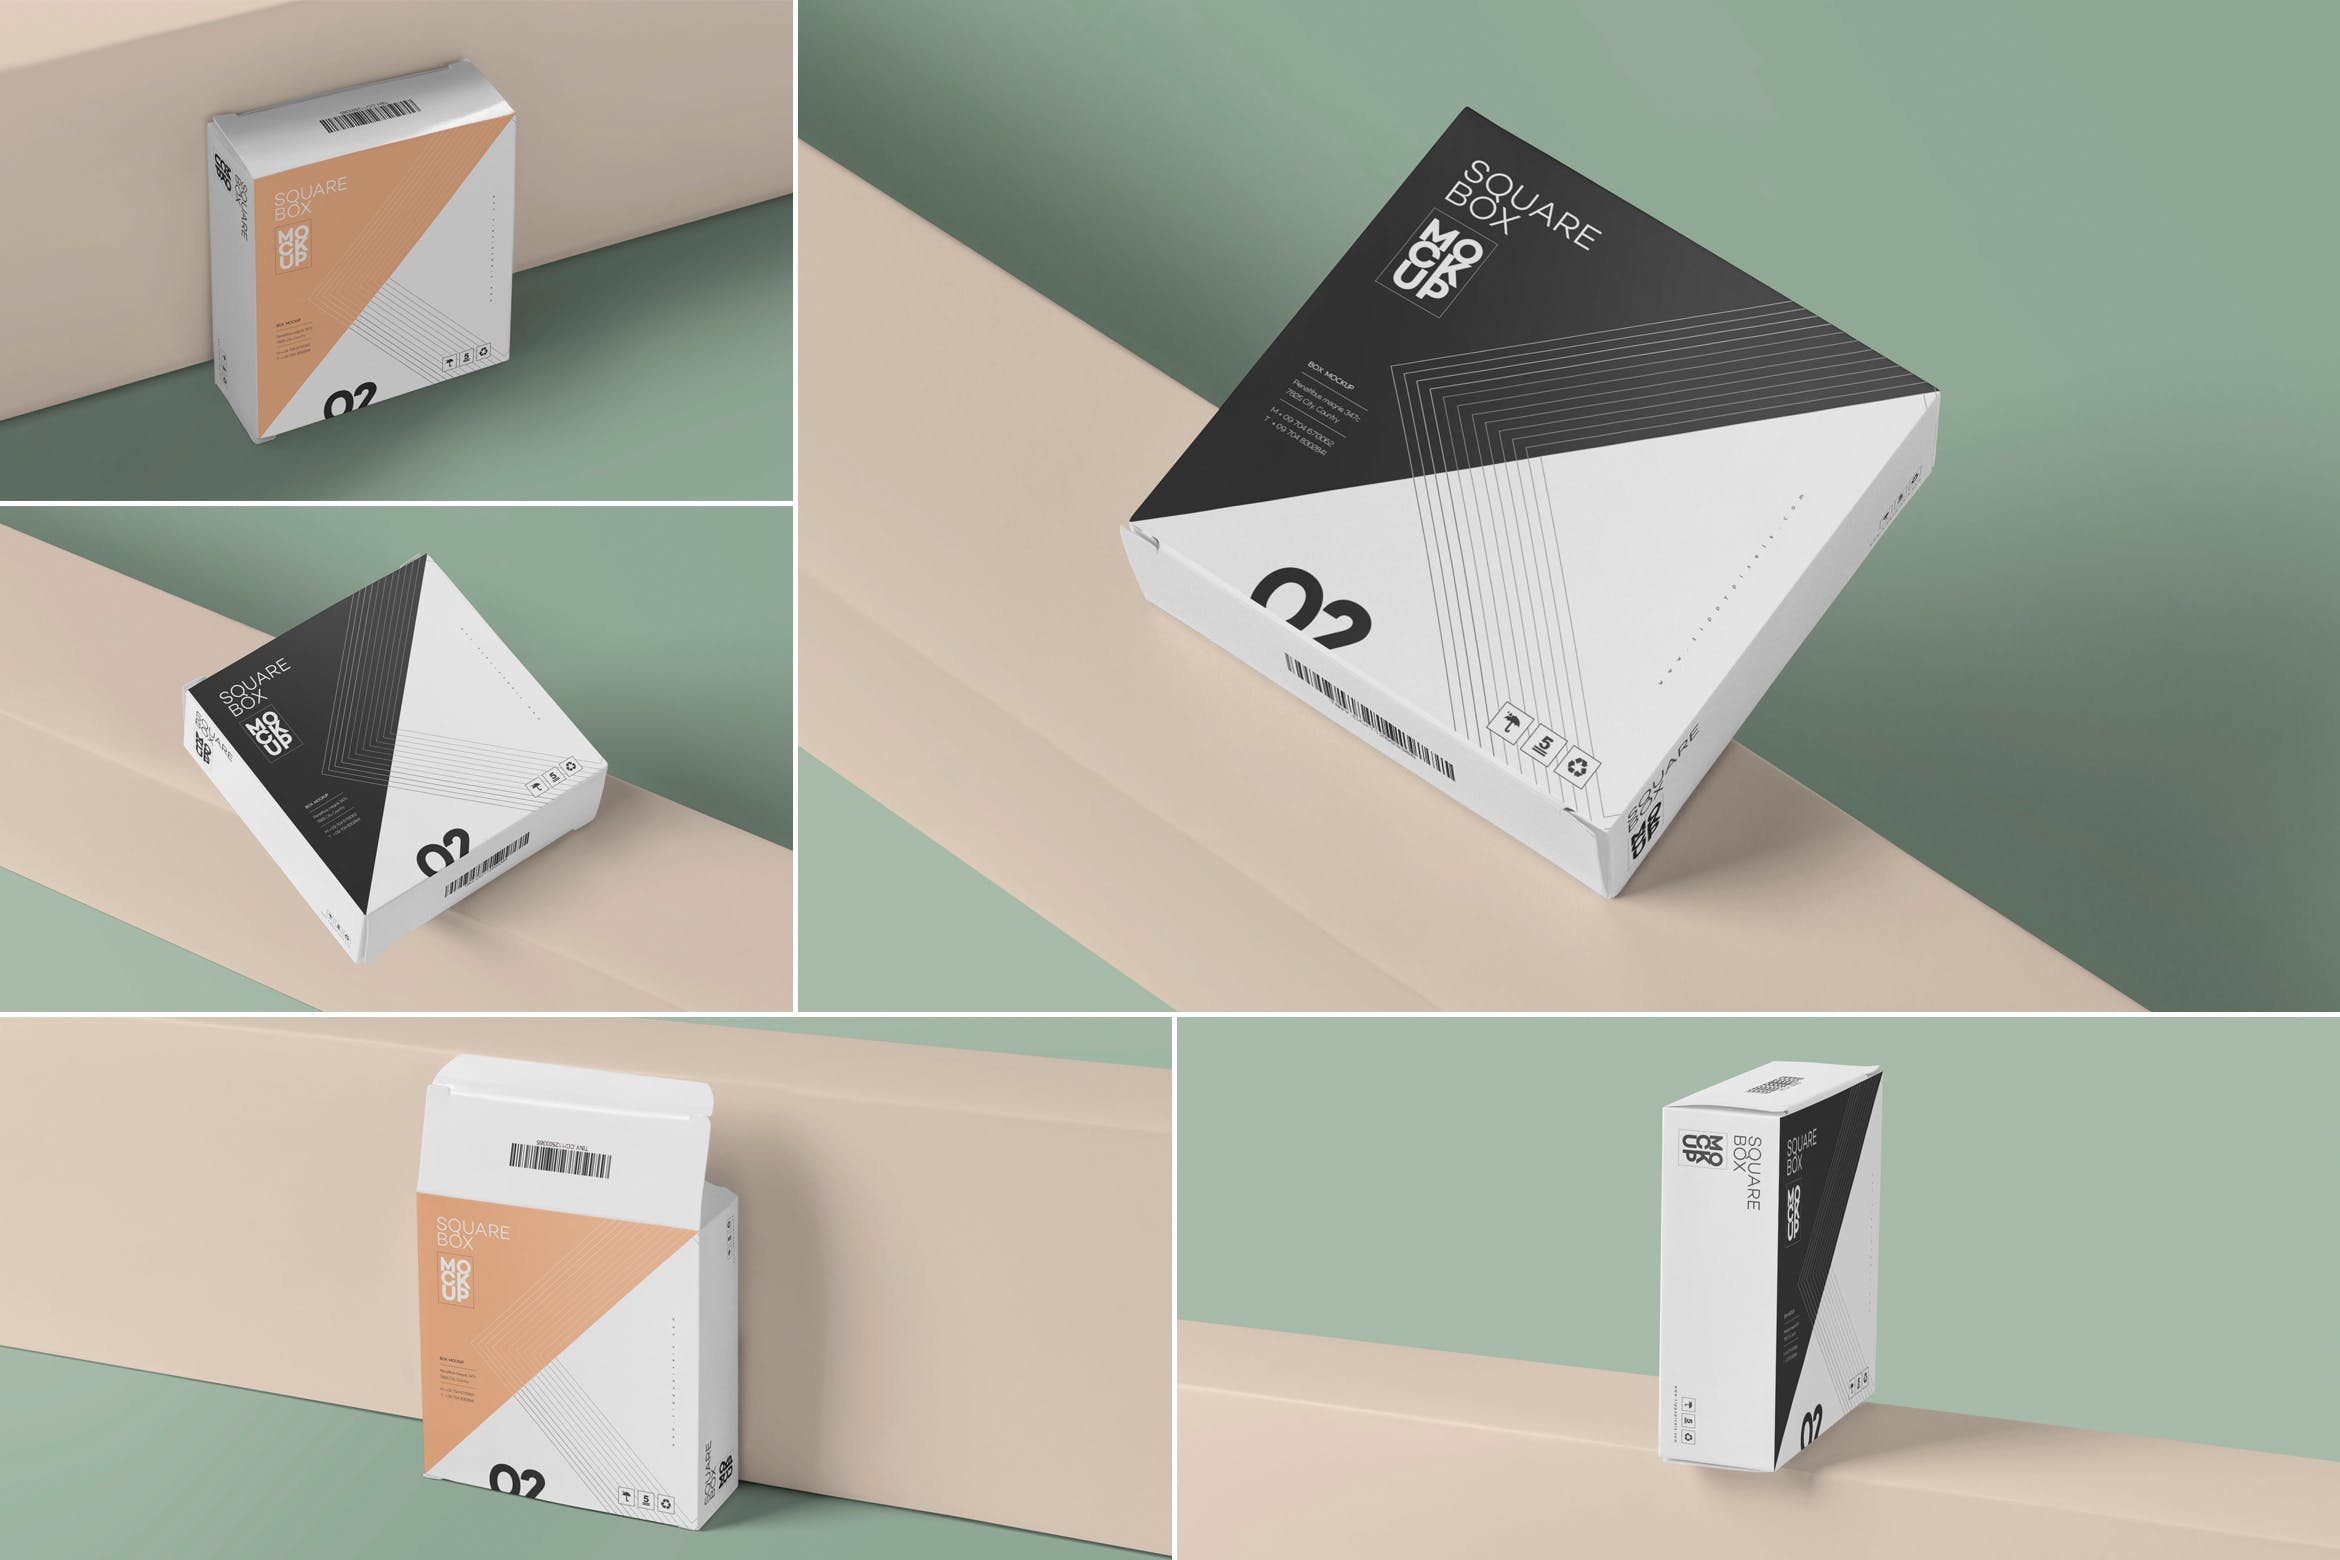 扁平方形产品包装盒设计图第一素材精选 Square Shaped Slim Box Mockups插图